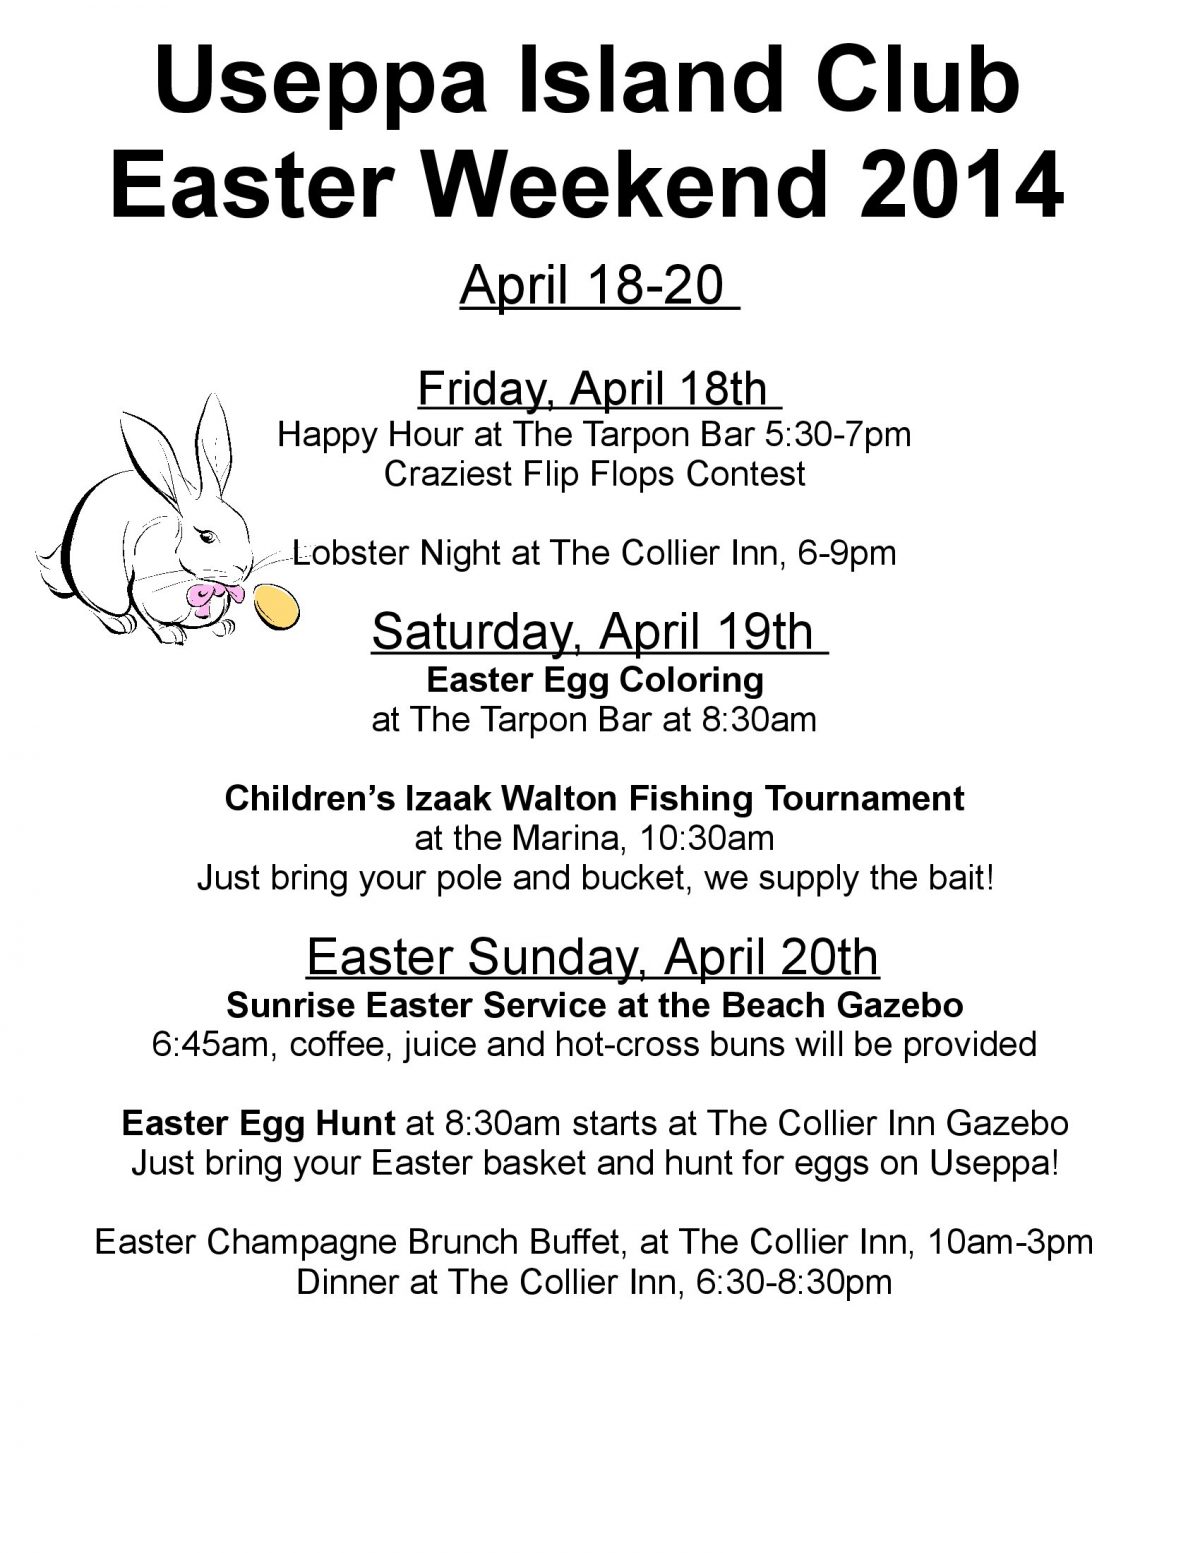 Easter Weekend 2014